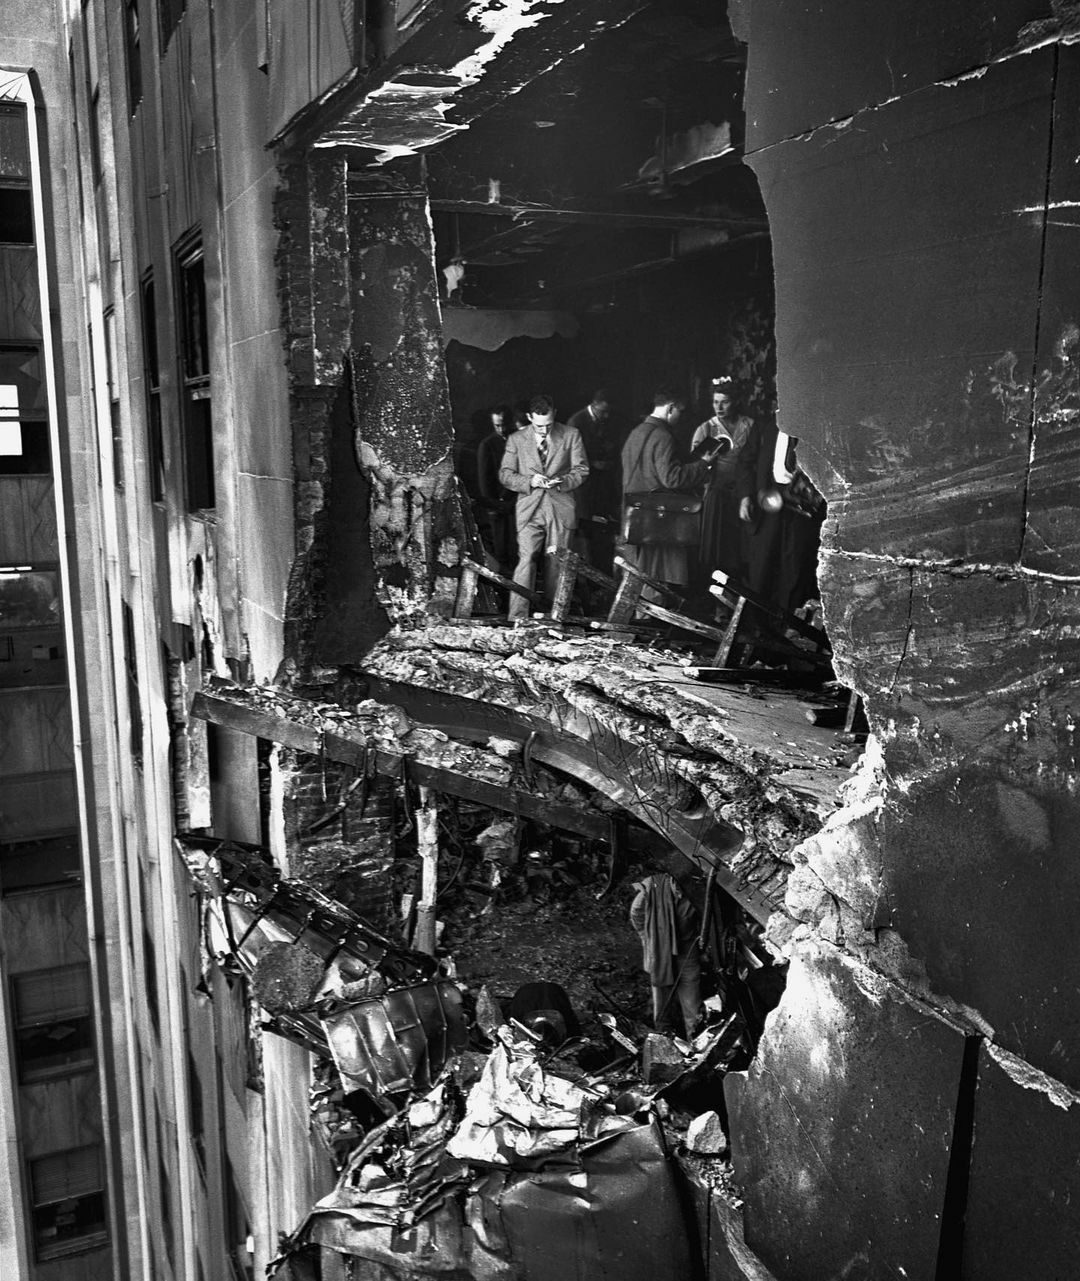 en 1945, un bombardier b-25 s’est perdu dans une zone de brouillard et s’est écrasé au 79e étage de l’empire state building. quatorze personnes sont décédées lors de cet incident.